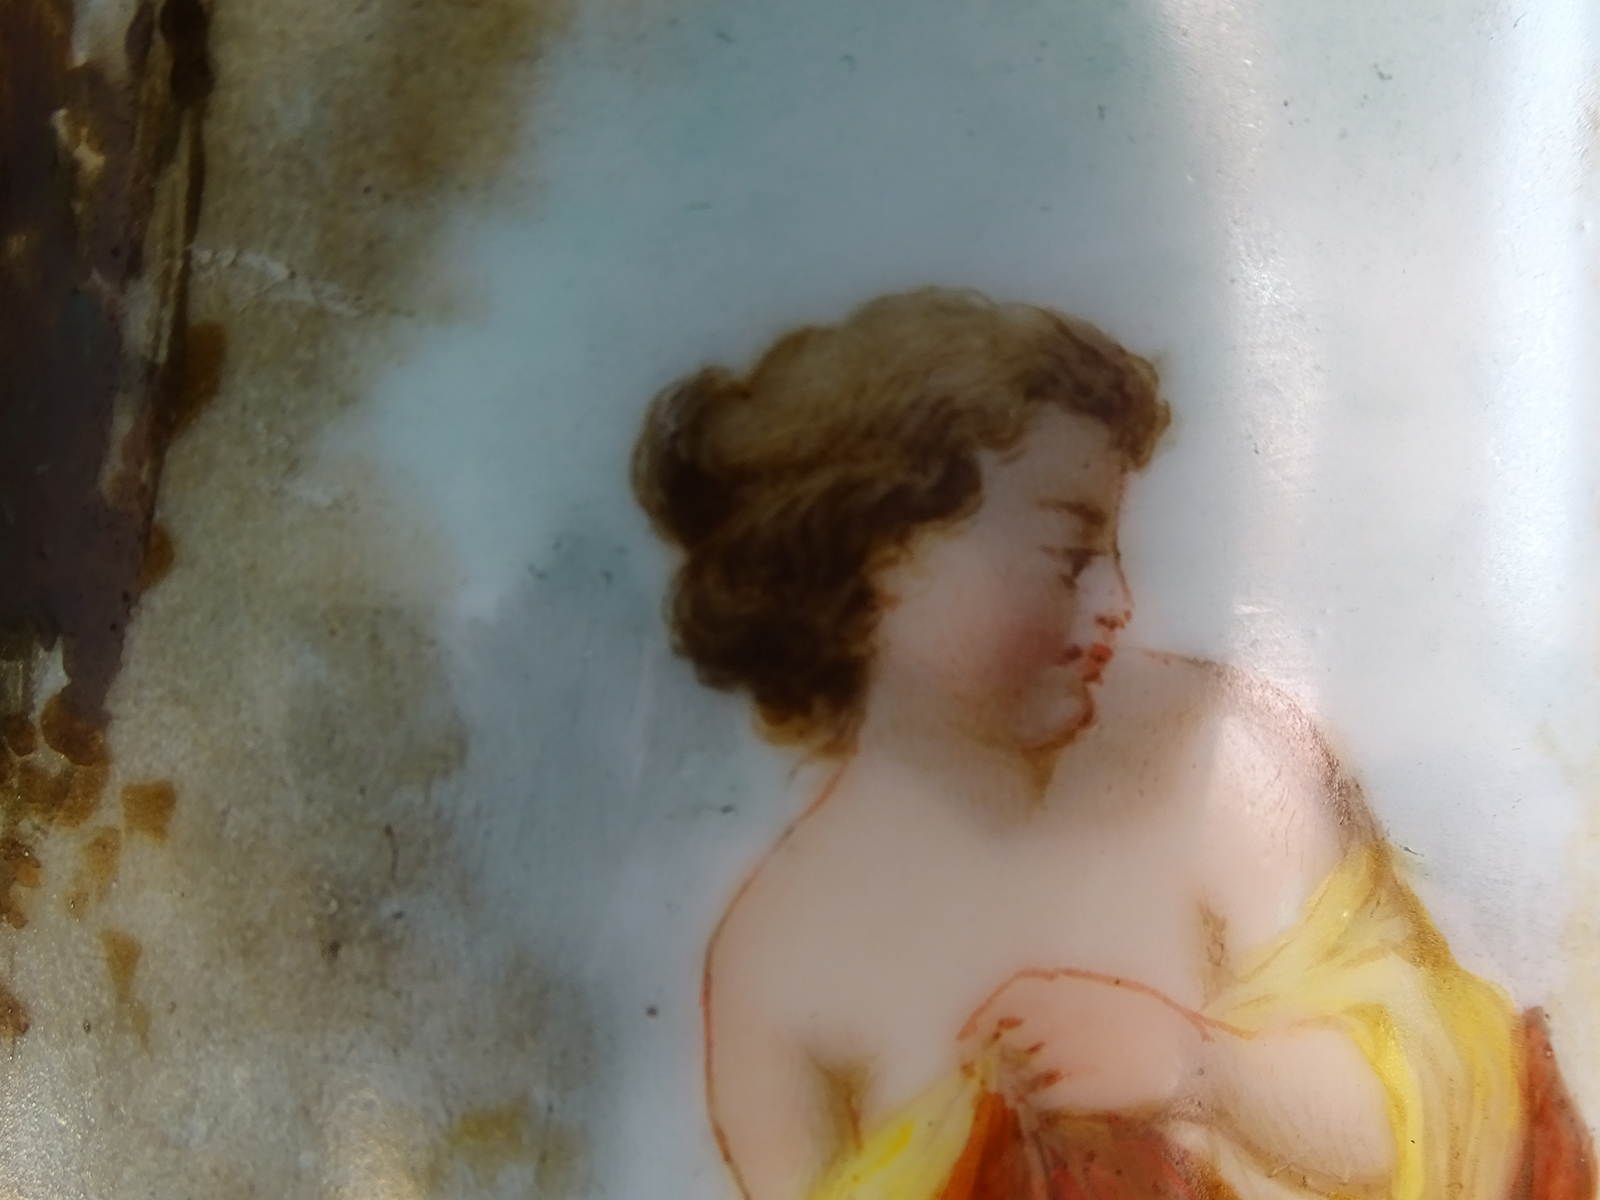 Fotografia kolorowa ukazująca fragment dekoracji malarskiej korpusu lampy naftowej. Przedstawiona jest postać kobieca w ujęciu do ramion, z pomarańczowo-żółtym szalem. Głowa kobiety zwrócona w prawą stronę, jej gęste włosy upięte są w luźny kok. W tle fragmenty leśnego pejzażu.